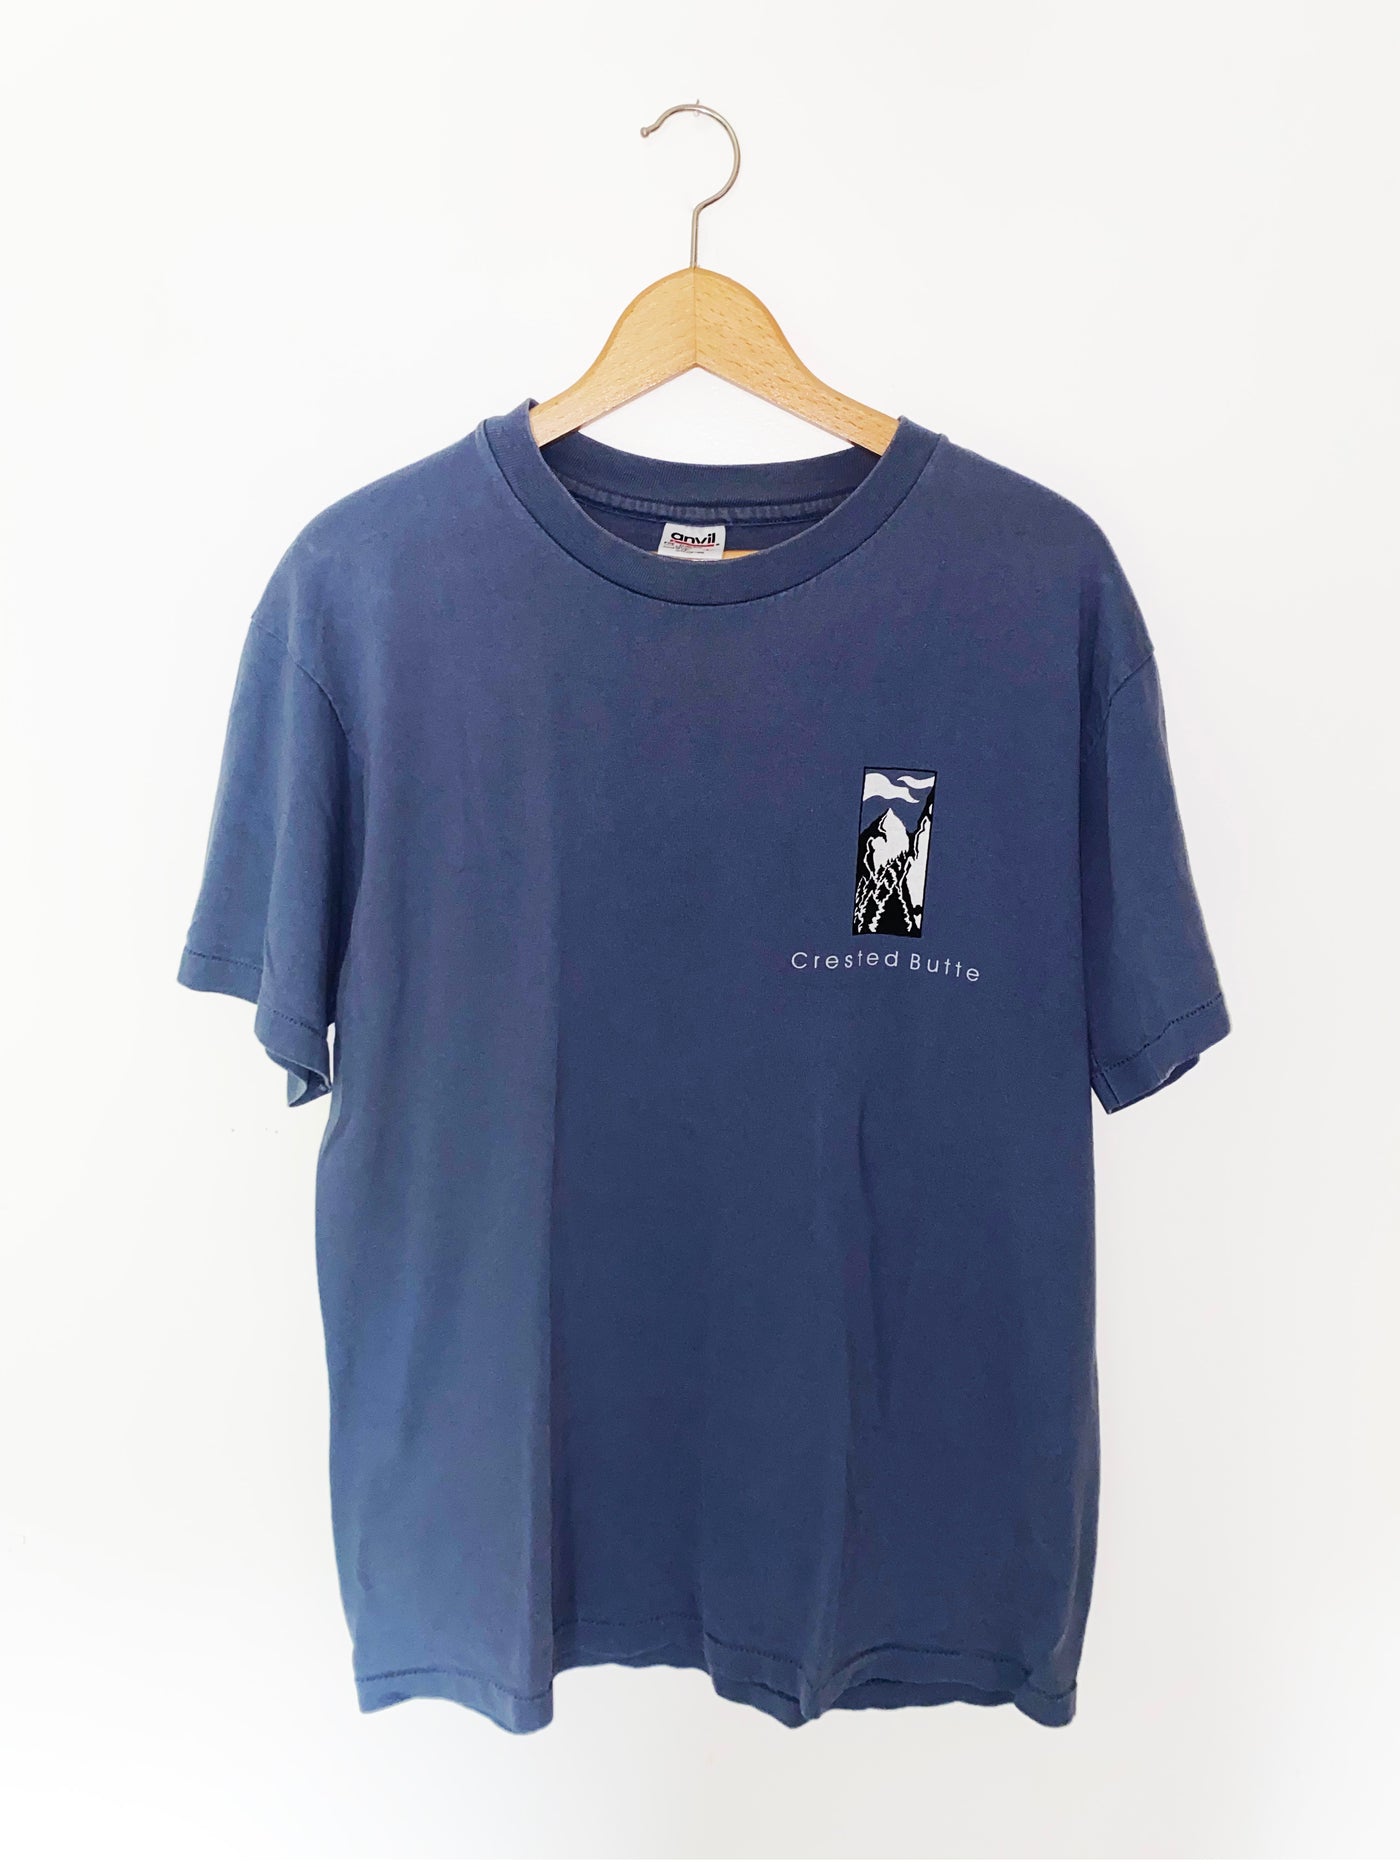 Vintage 1997 Crested Butte Ski T-Shirt